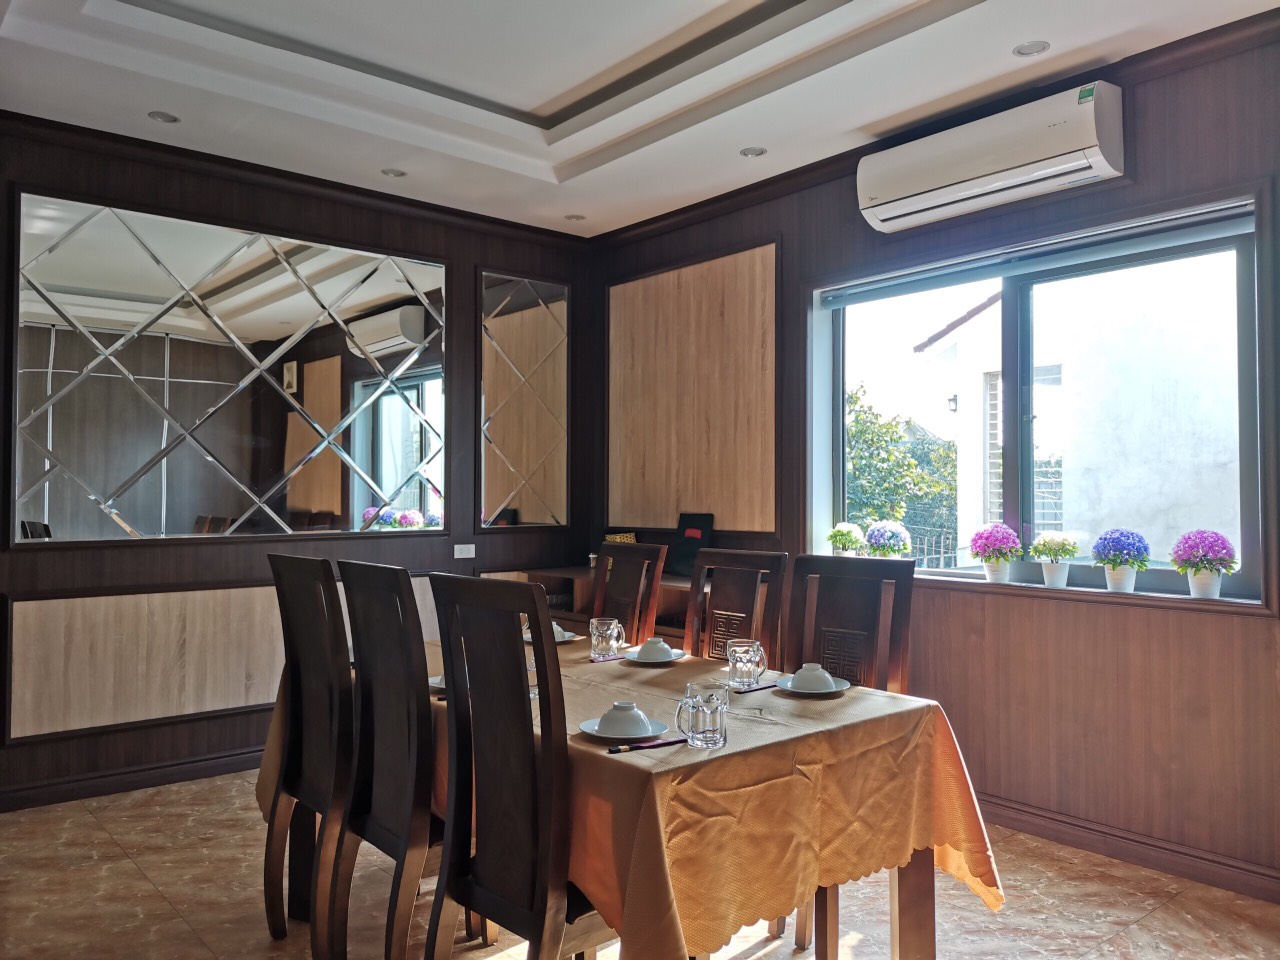 Tam op AnPro 1 - A beautiful modern restaurant design with wood grain wall panels